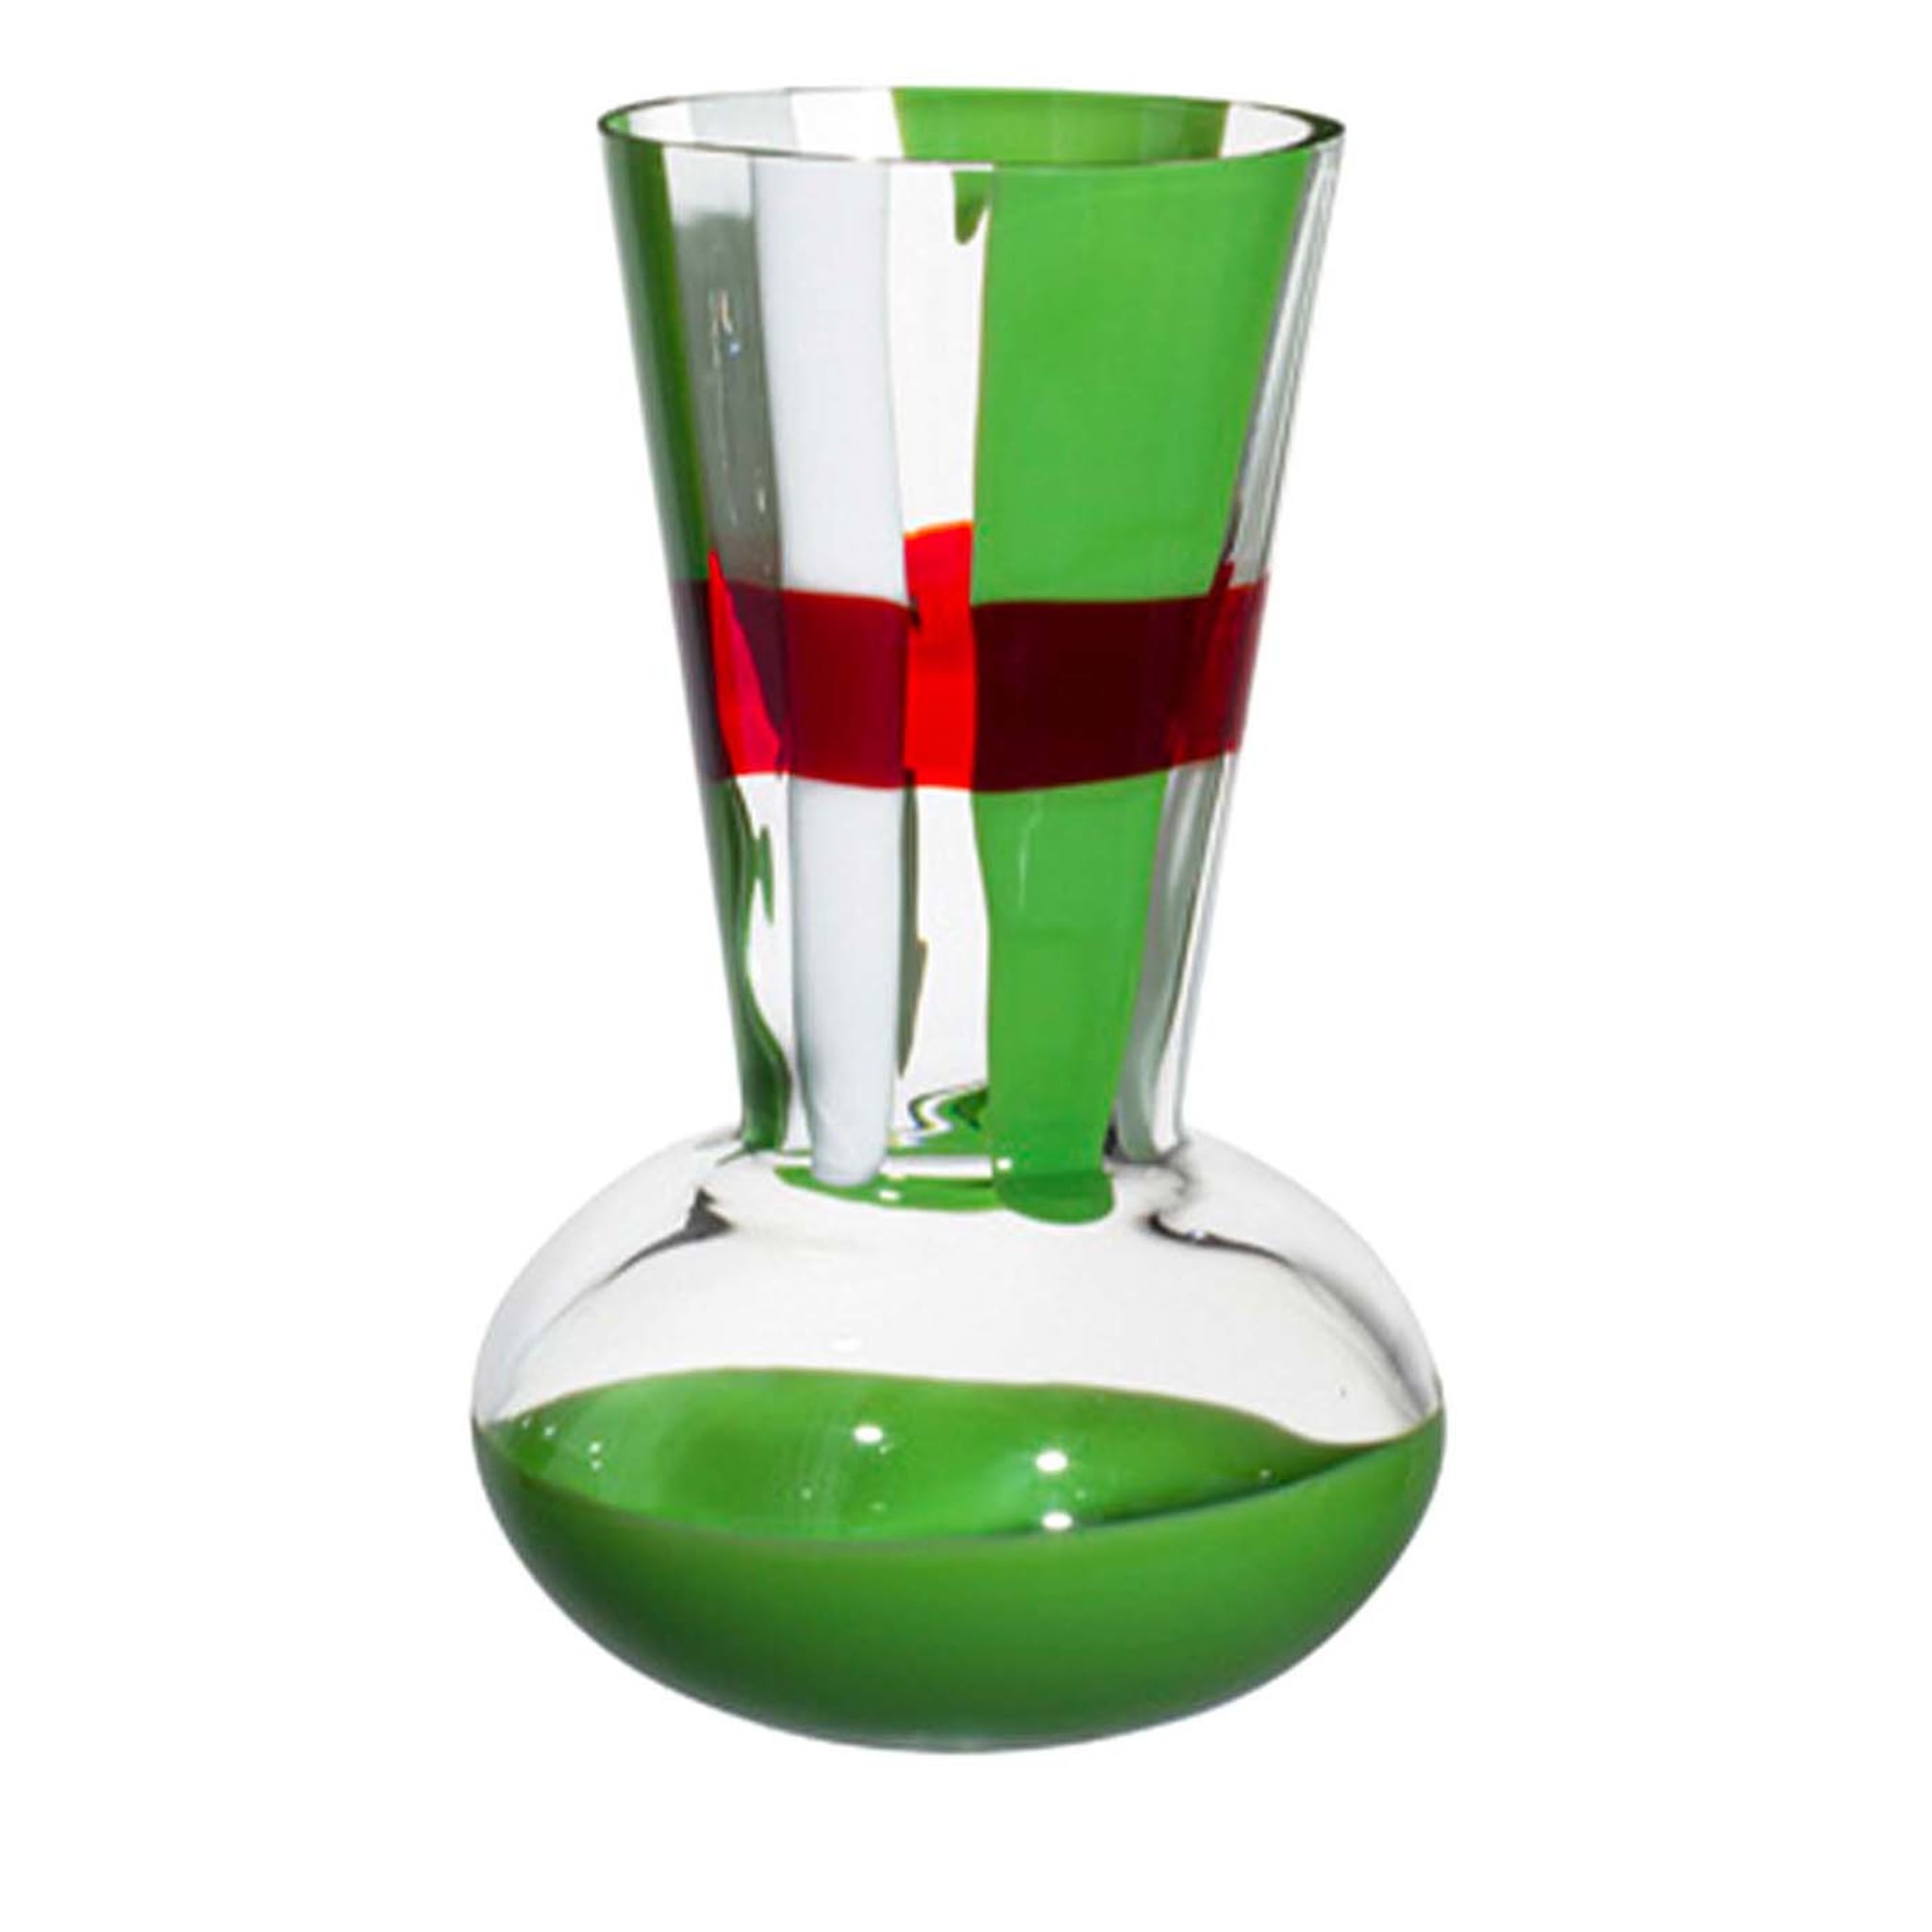 Troncosfera Grün/Weiß/Rot gestreifte Vase von Carlo Moretti - Hauptansicht